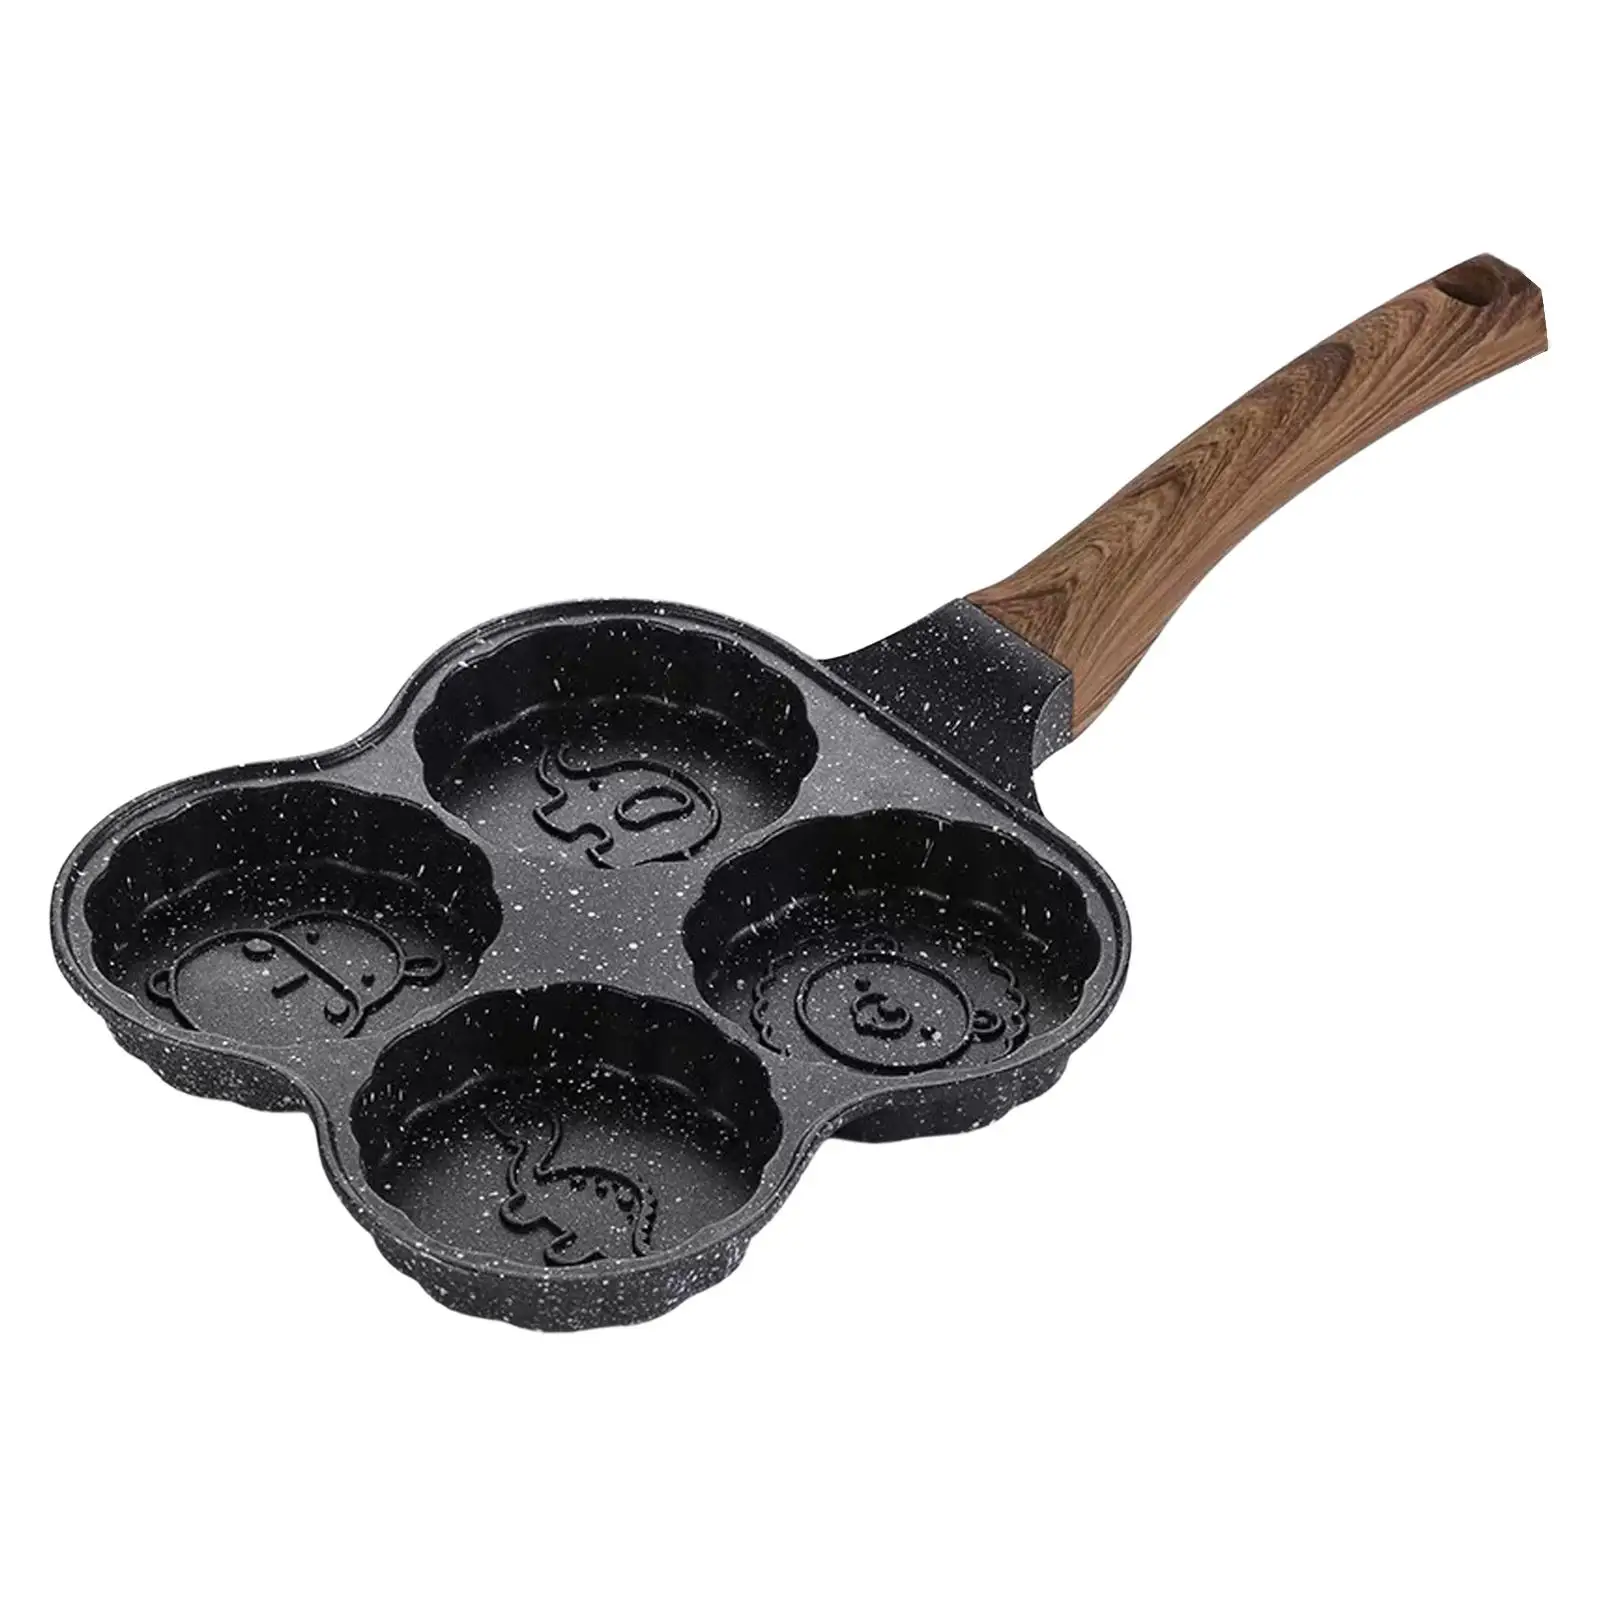 Nonstick Egg Frying Pan Pancake Pan Breakfast Skillet Premium Material Professional Durable home Pan for Breakfast